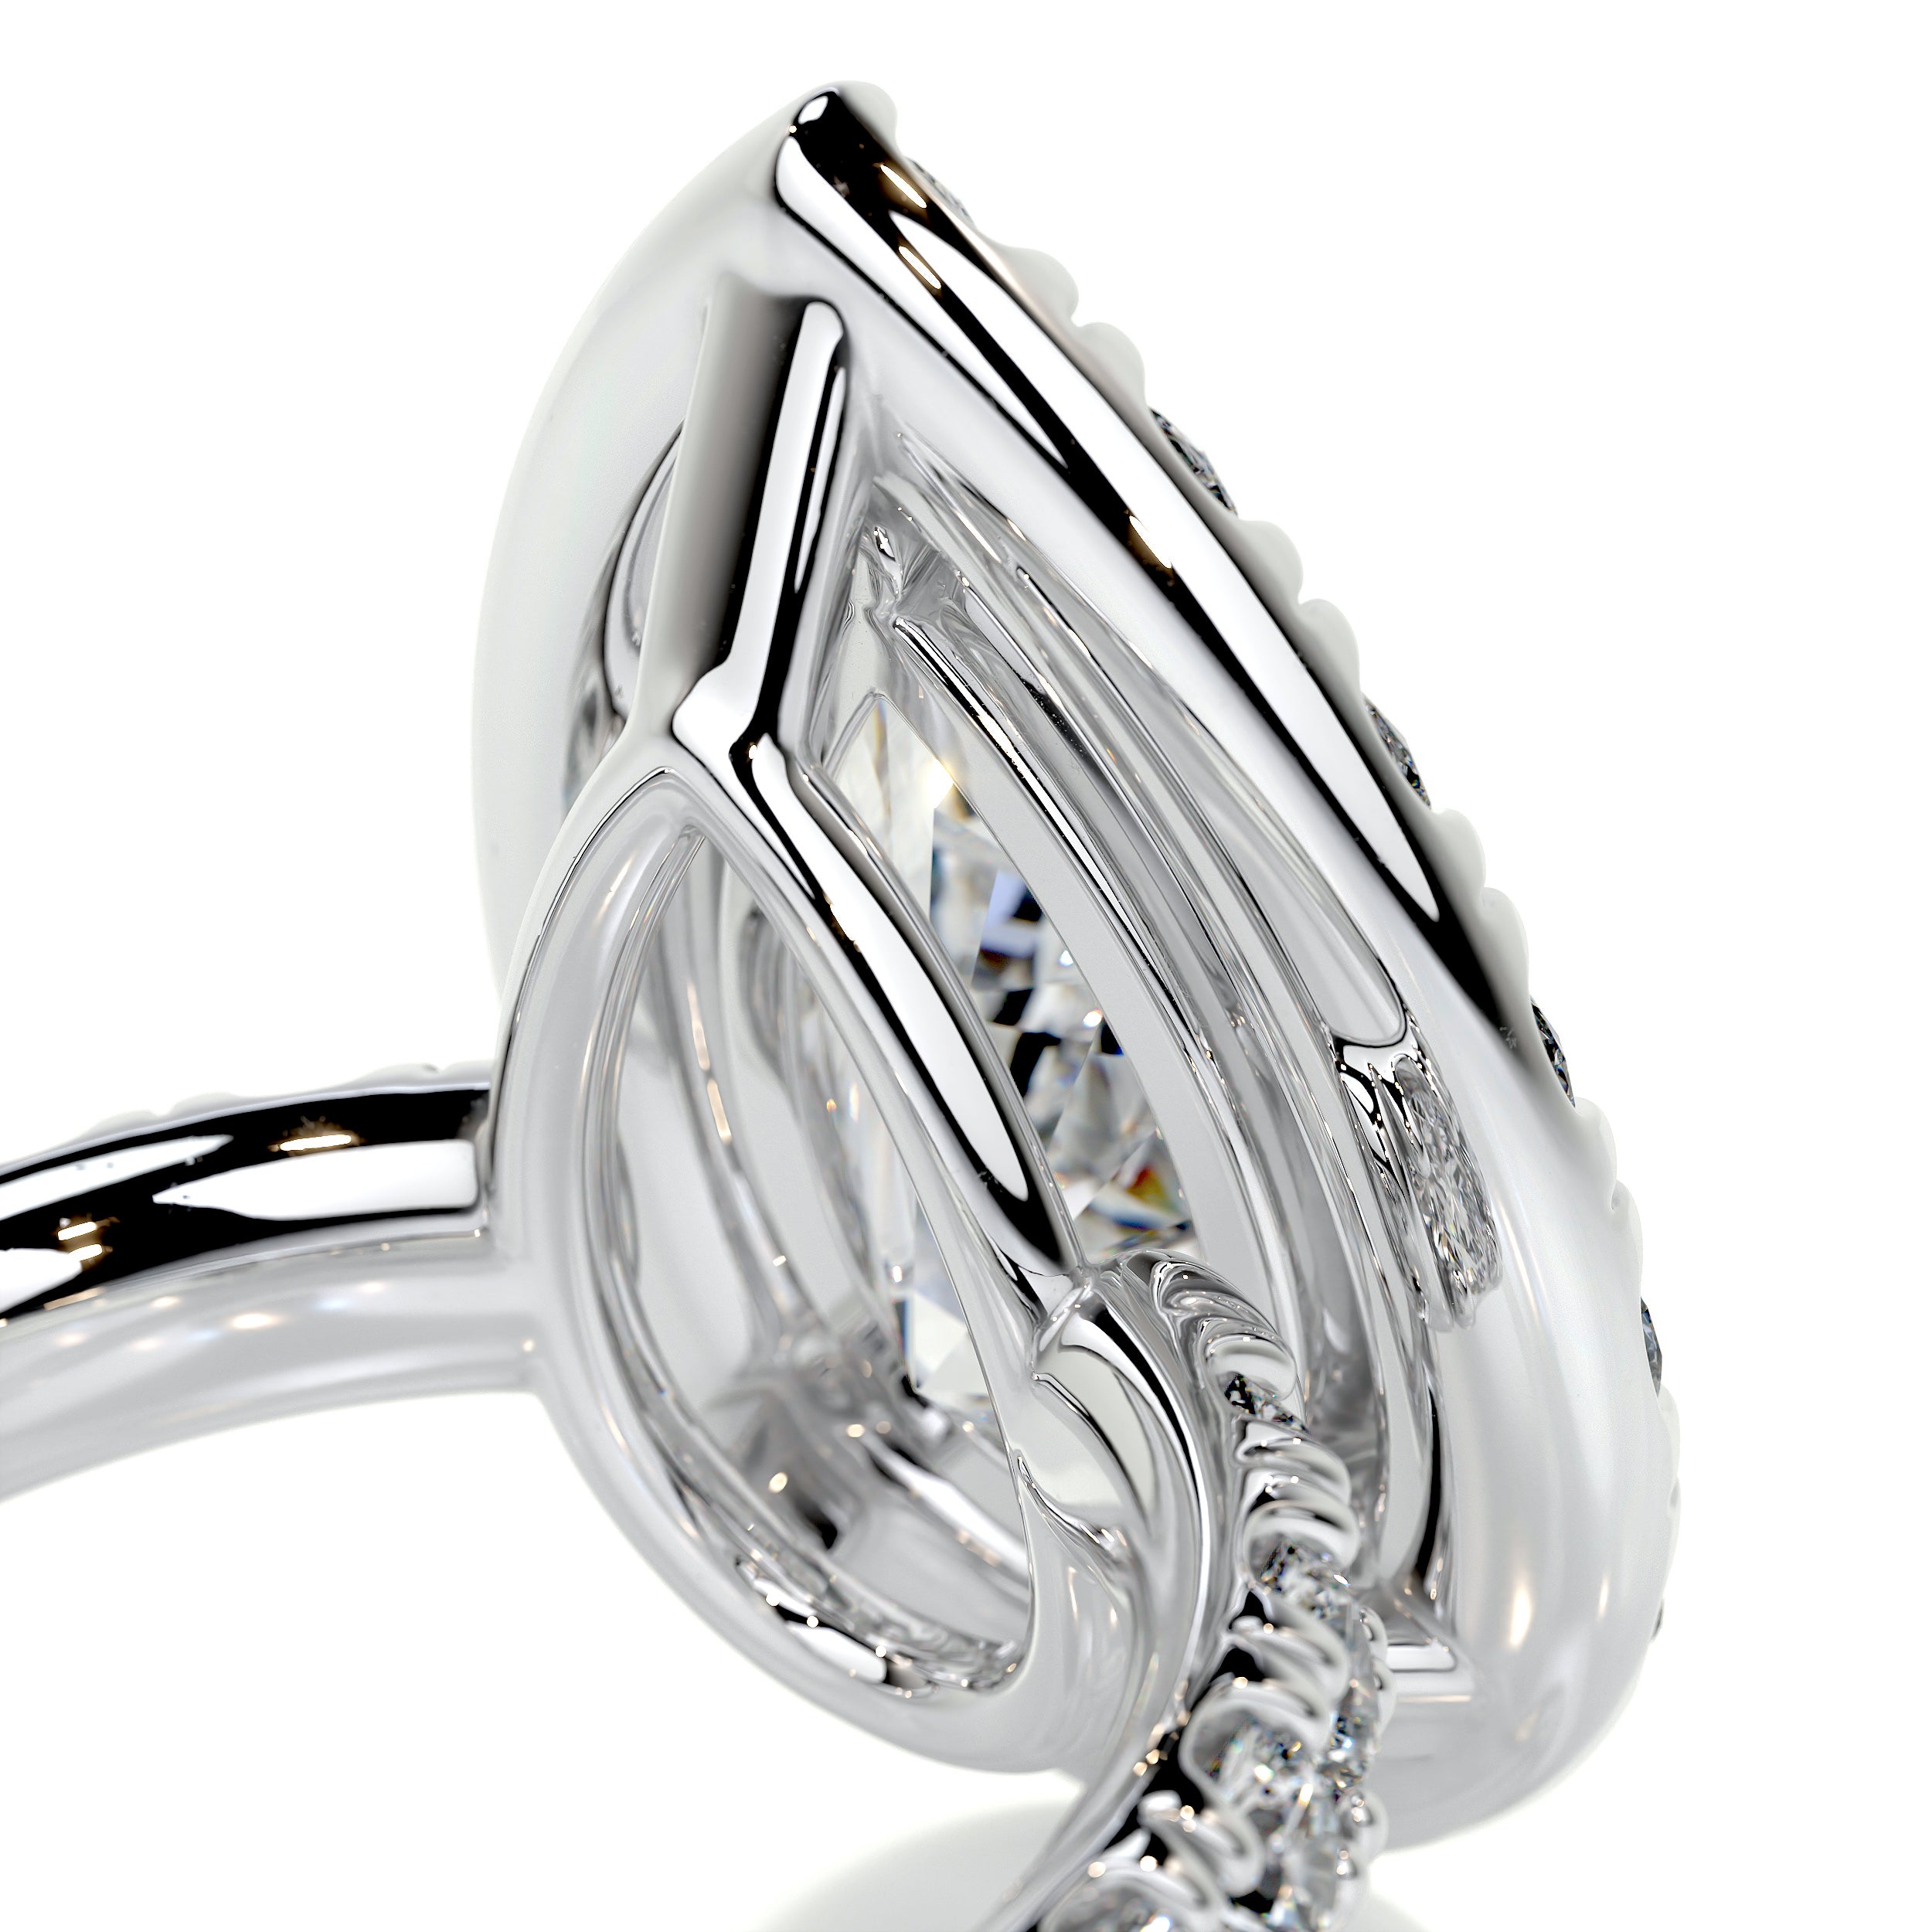 Maya Diamond Engagement Ring   (4 Carat) -14K White Gold